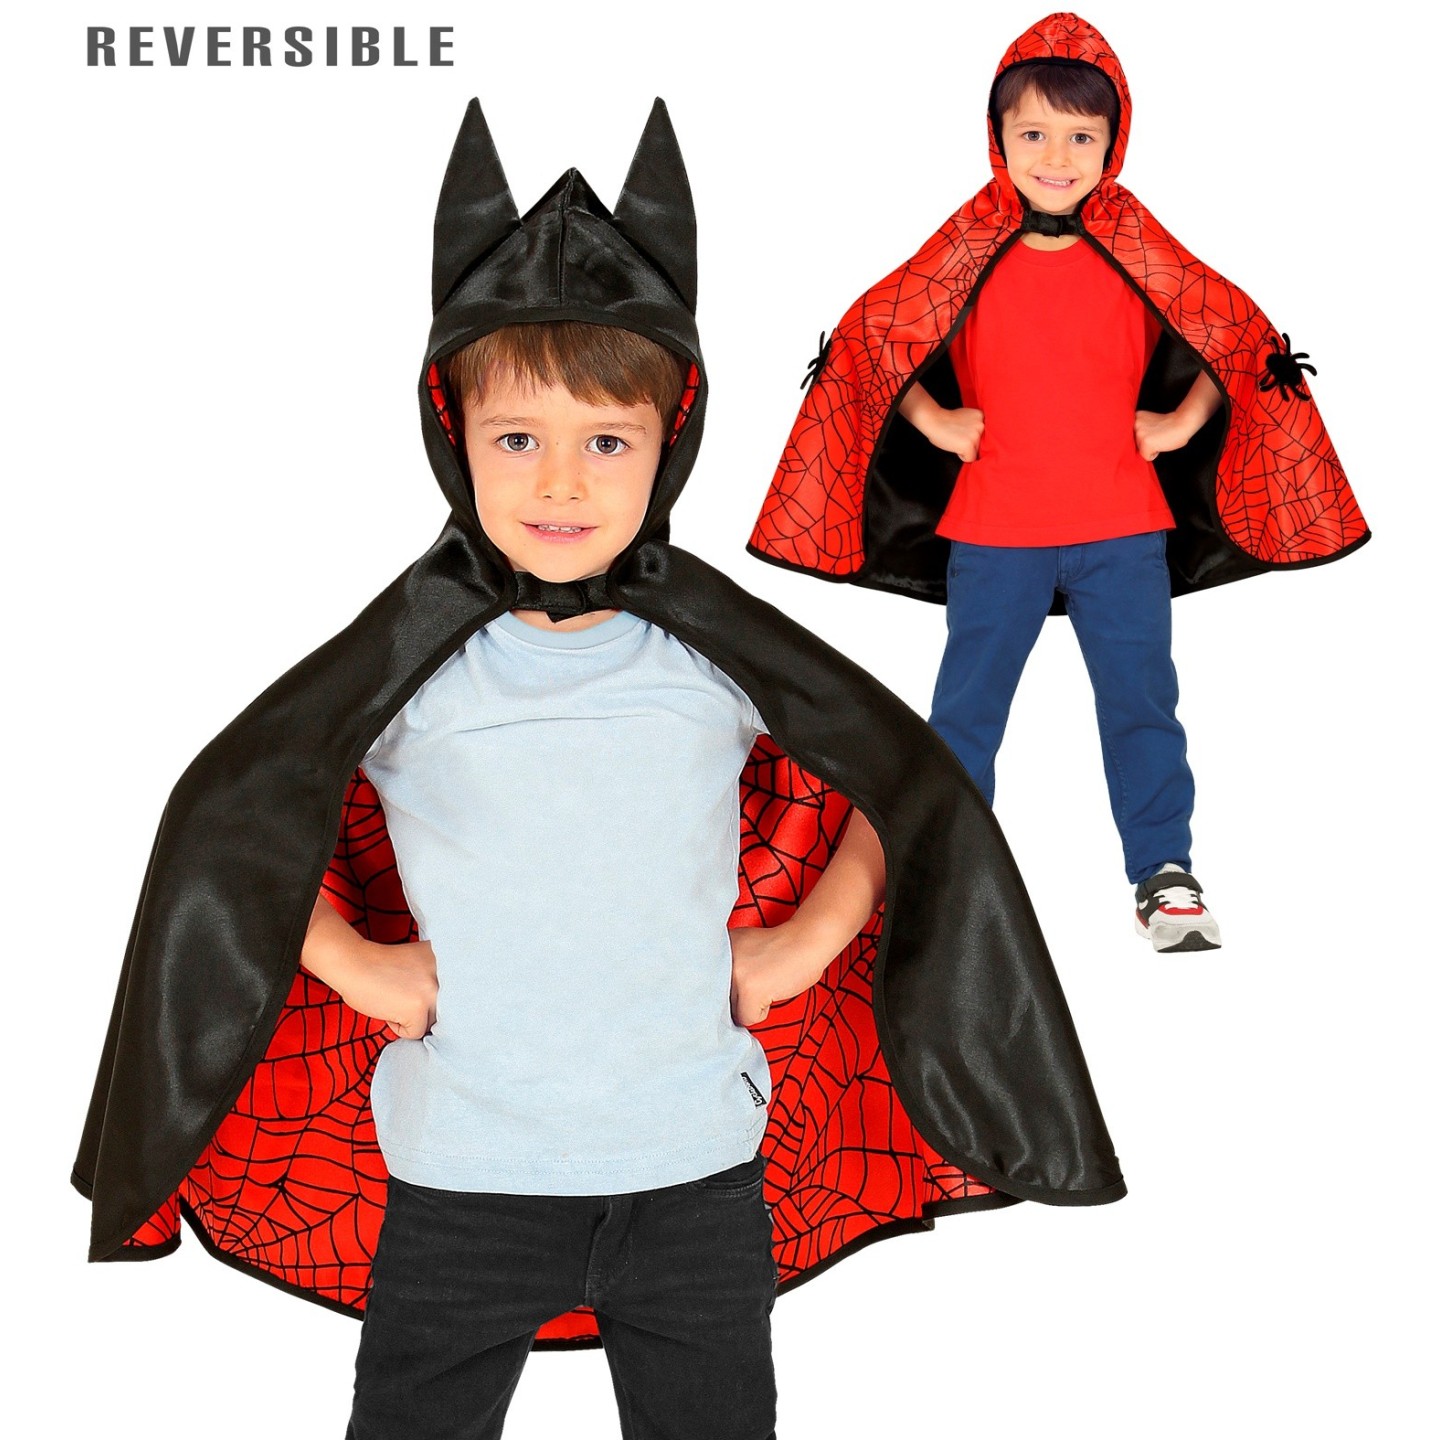 Opknappen Bestrooi Afhankelijk Superheld cape kind bestellen ? | Jokershop - Superhelden kleding